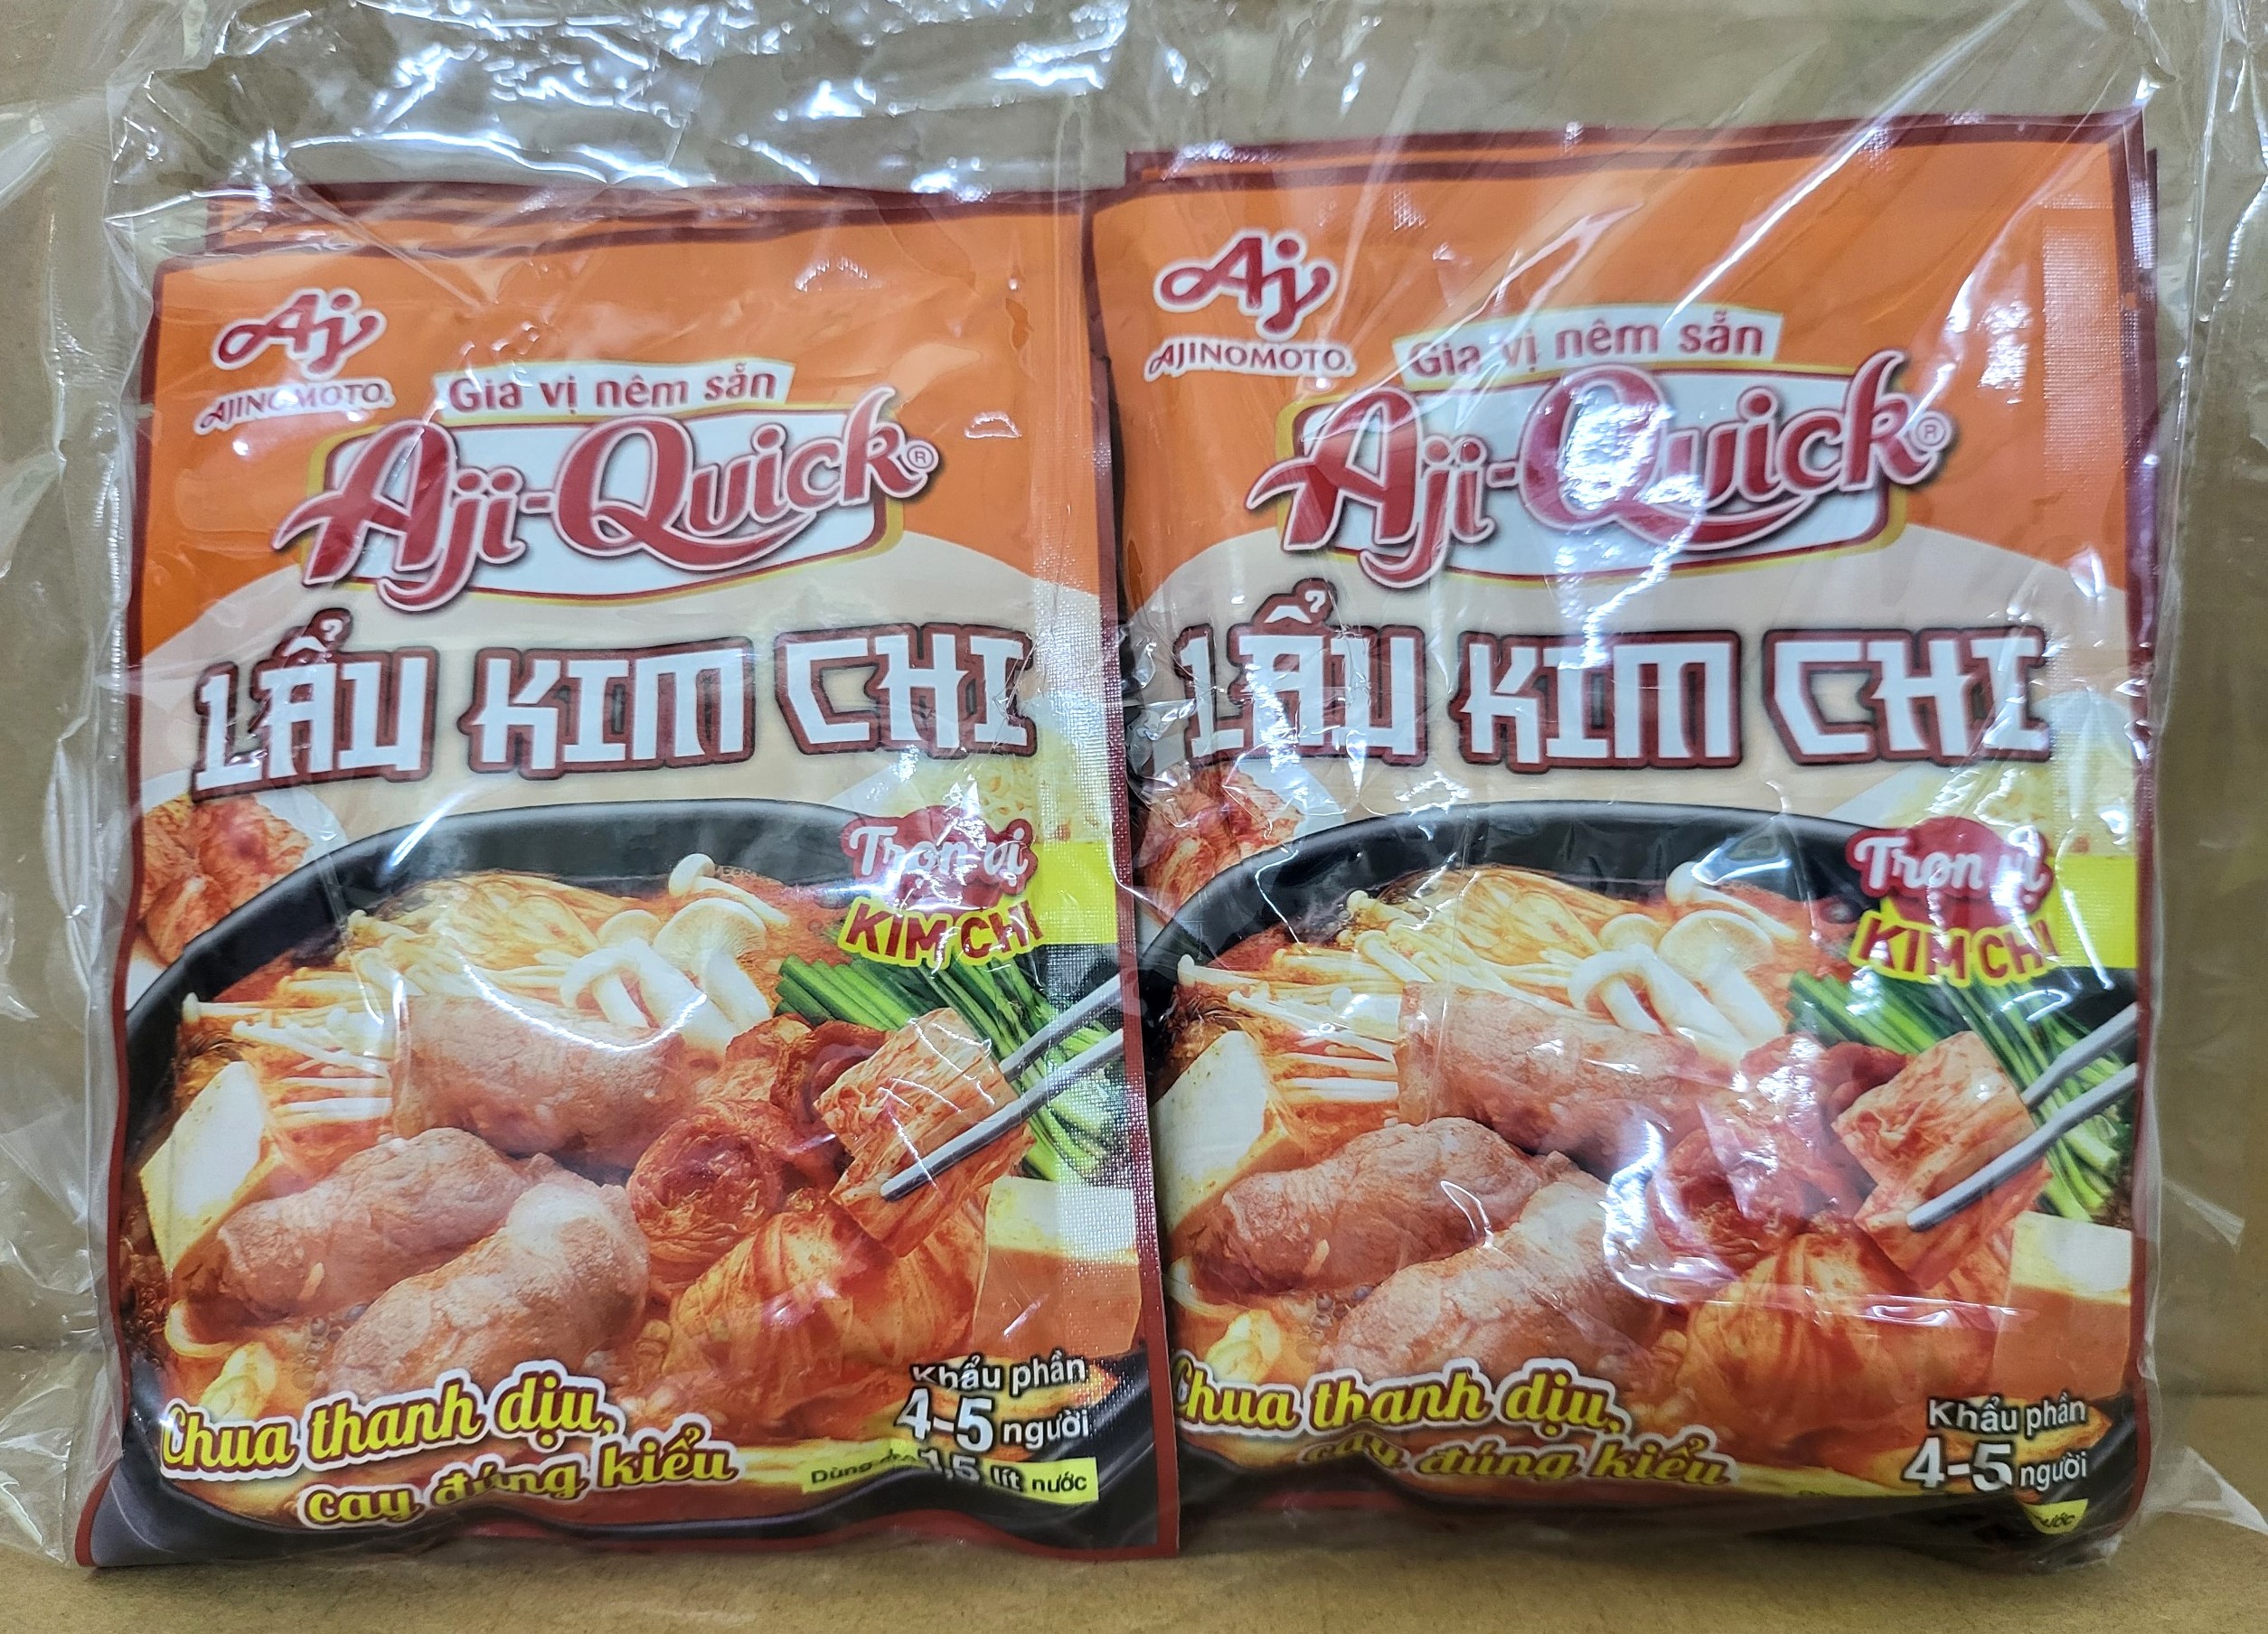 LỐC 12 gói x 44g LẨU KIM CHI gia vị nêm sẵn AJI QUICK VN AJINOMOTO Kimchi